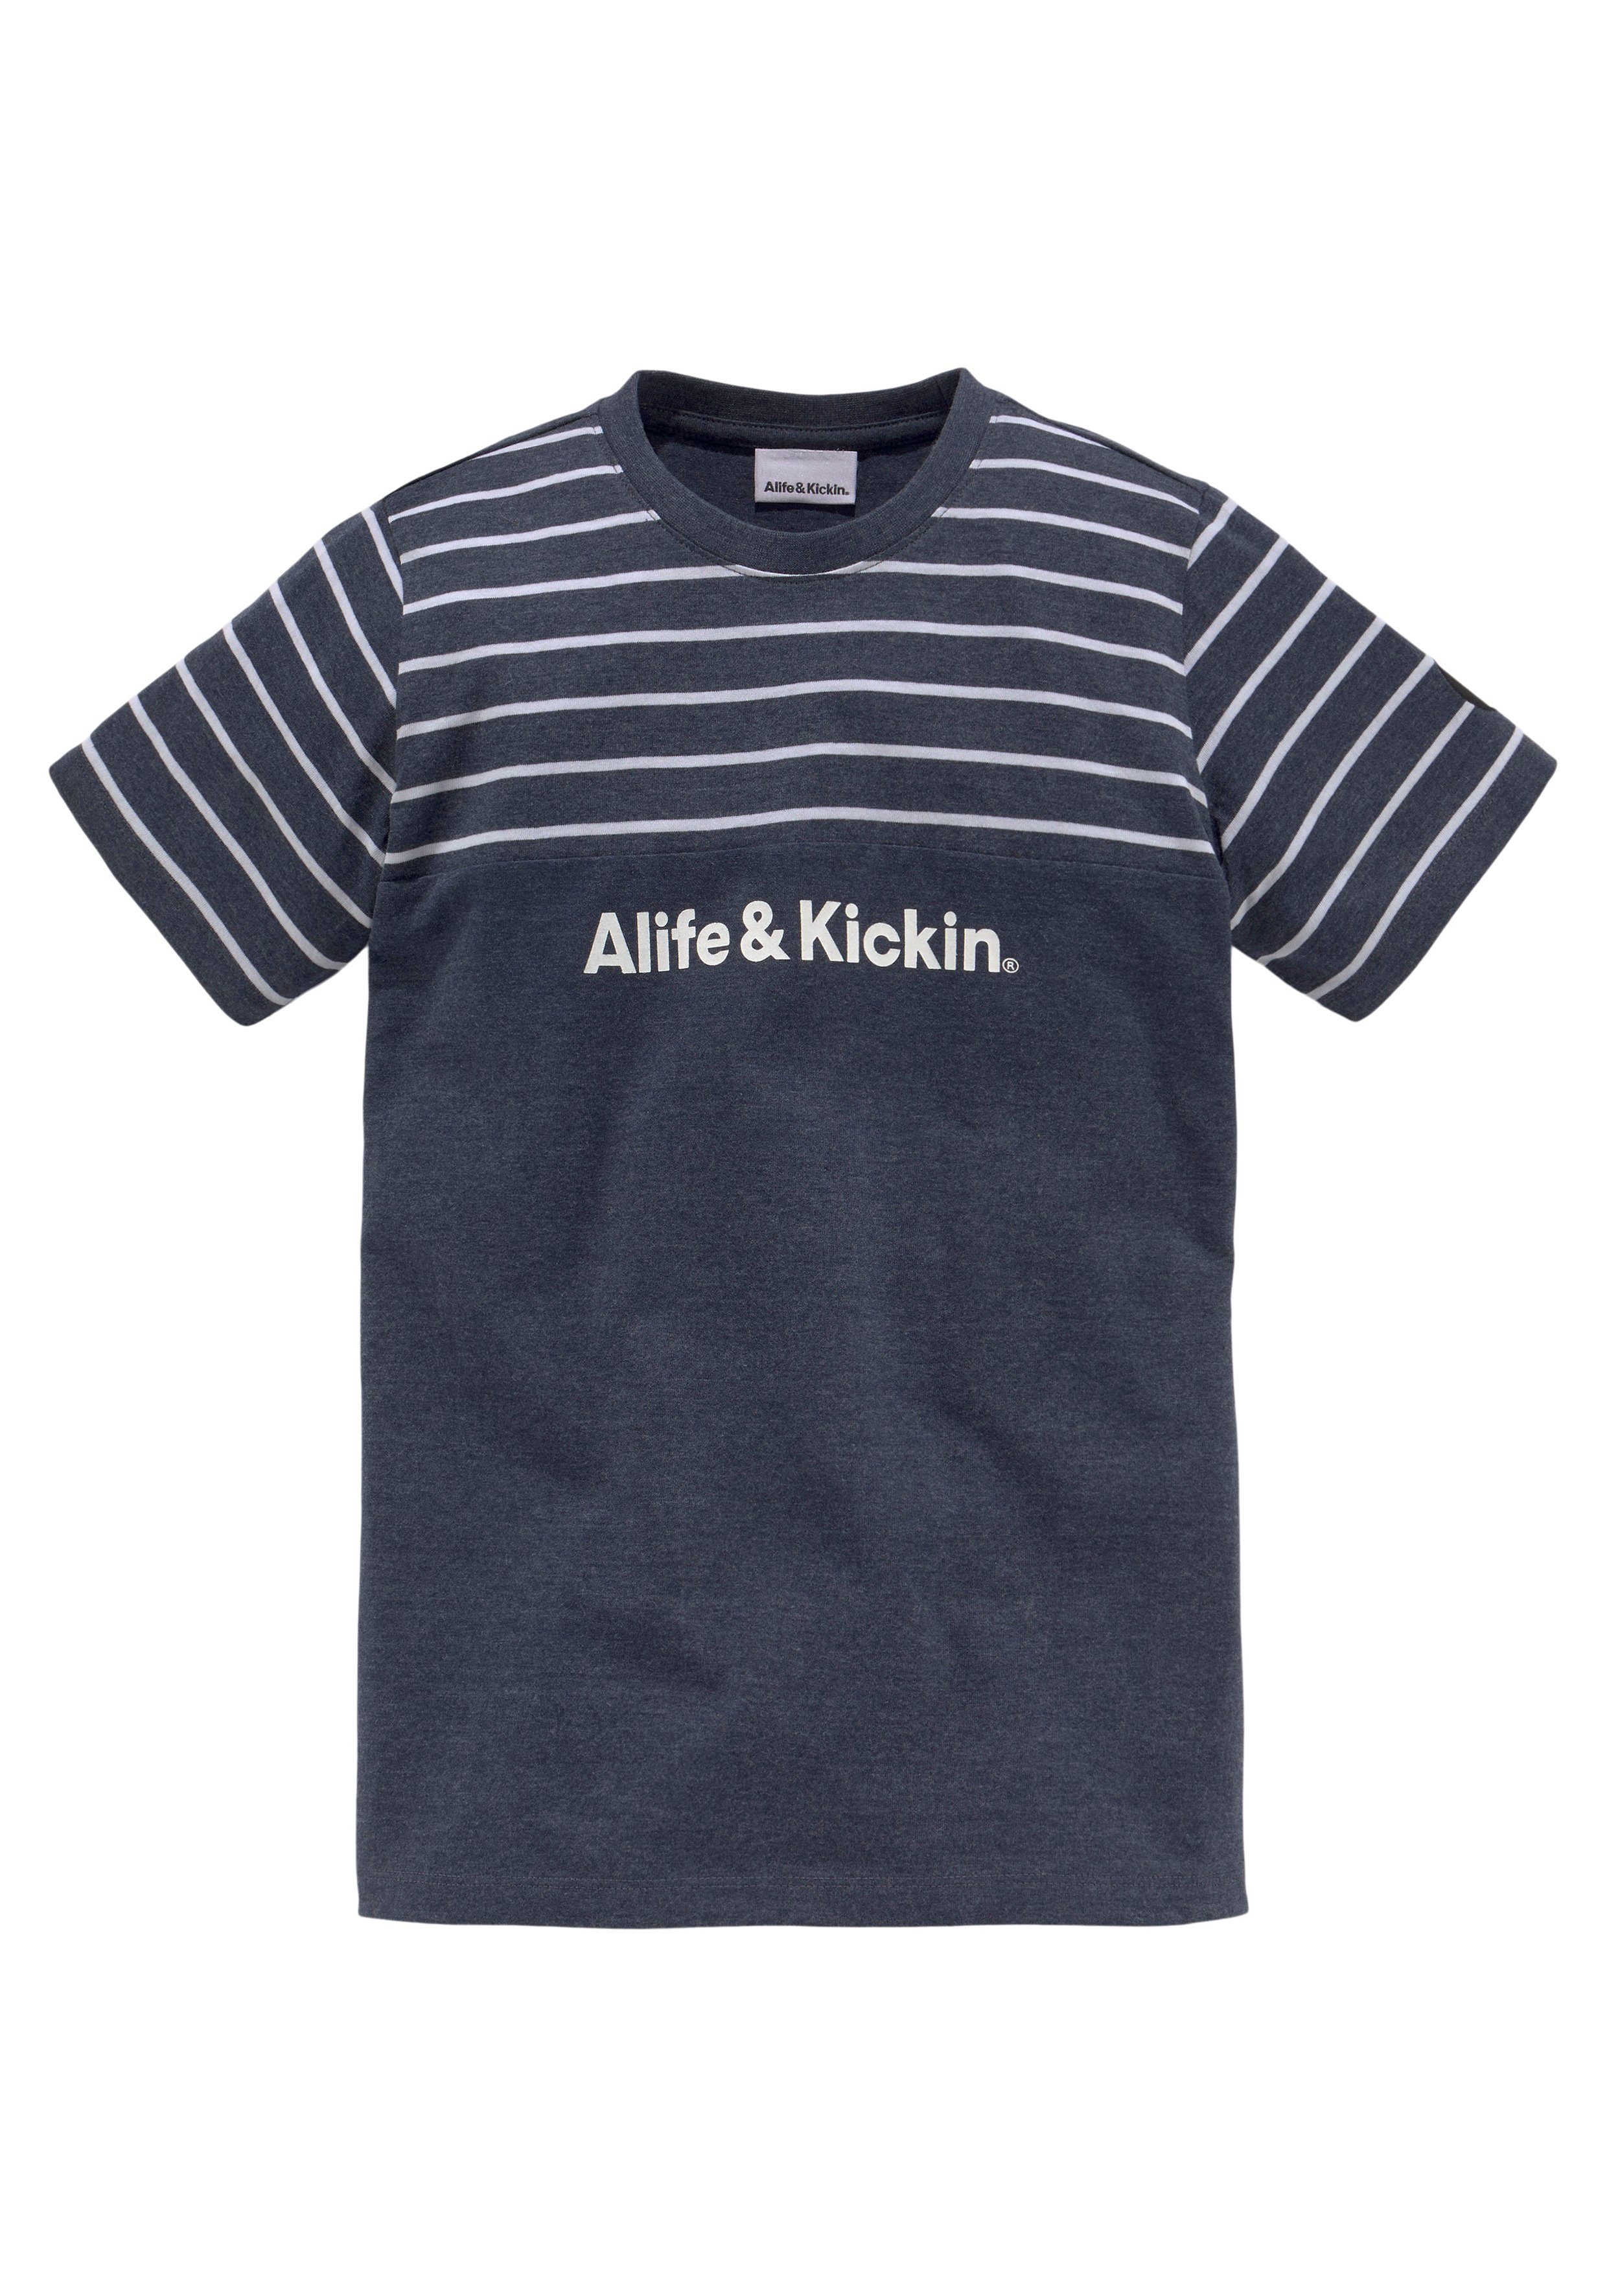 Alife & Kickin T-Shirt garngefärbten melierter und NEUE Colorblocking Ringel, MARKE! in Qualität